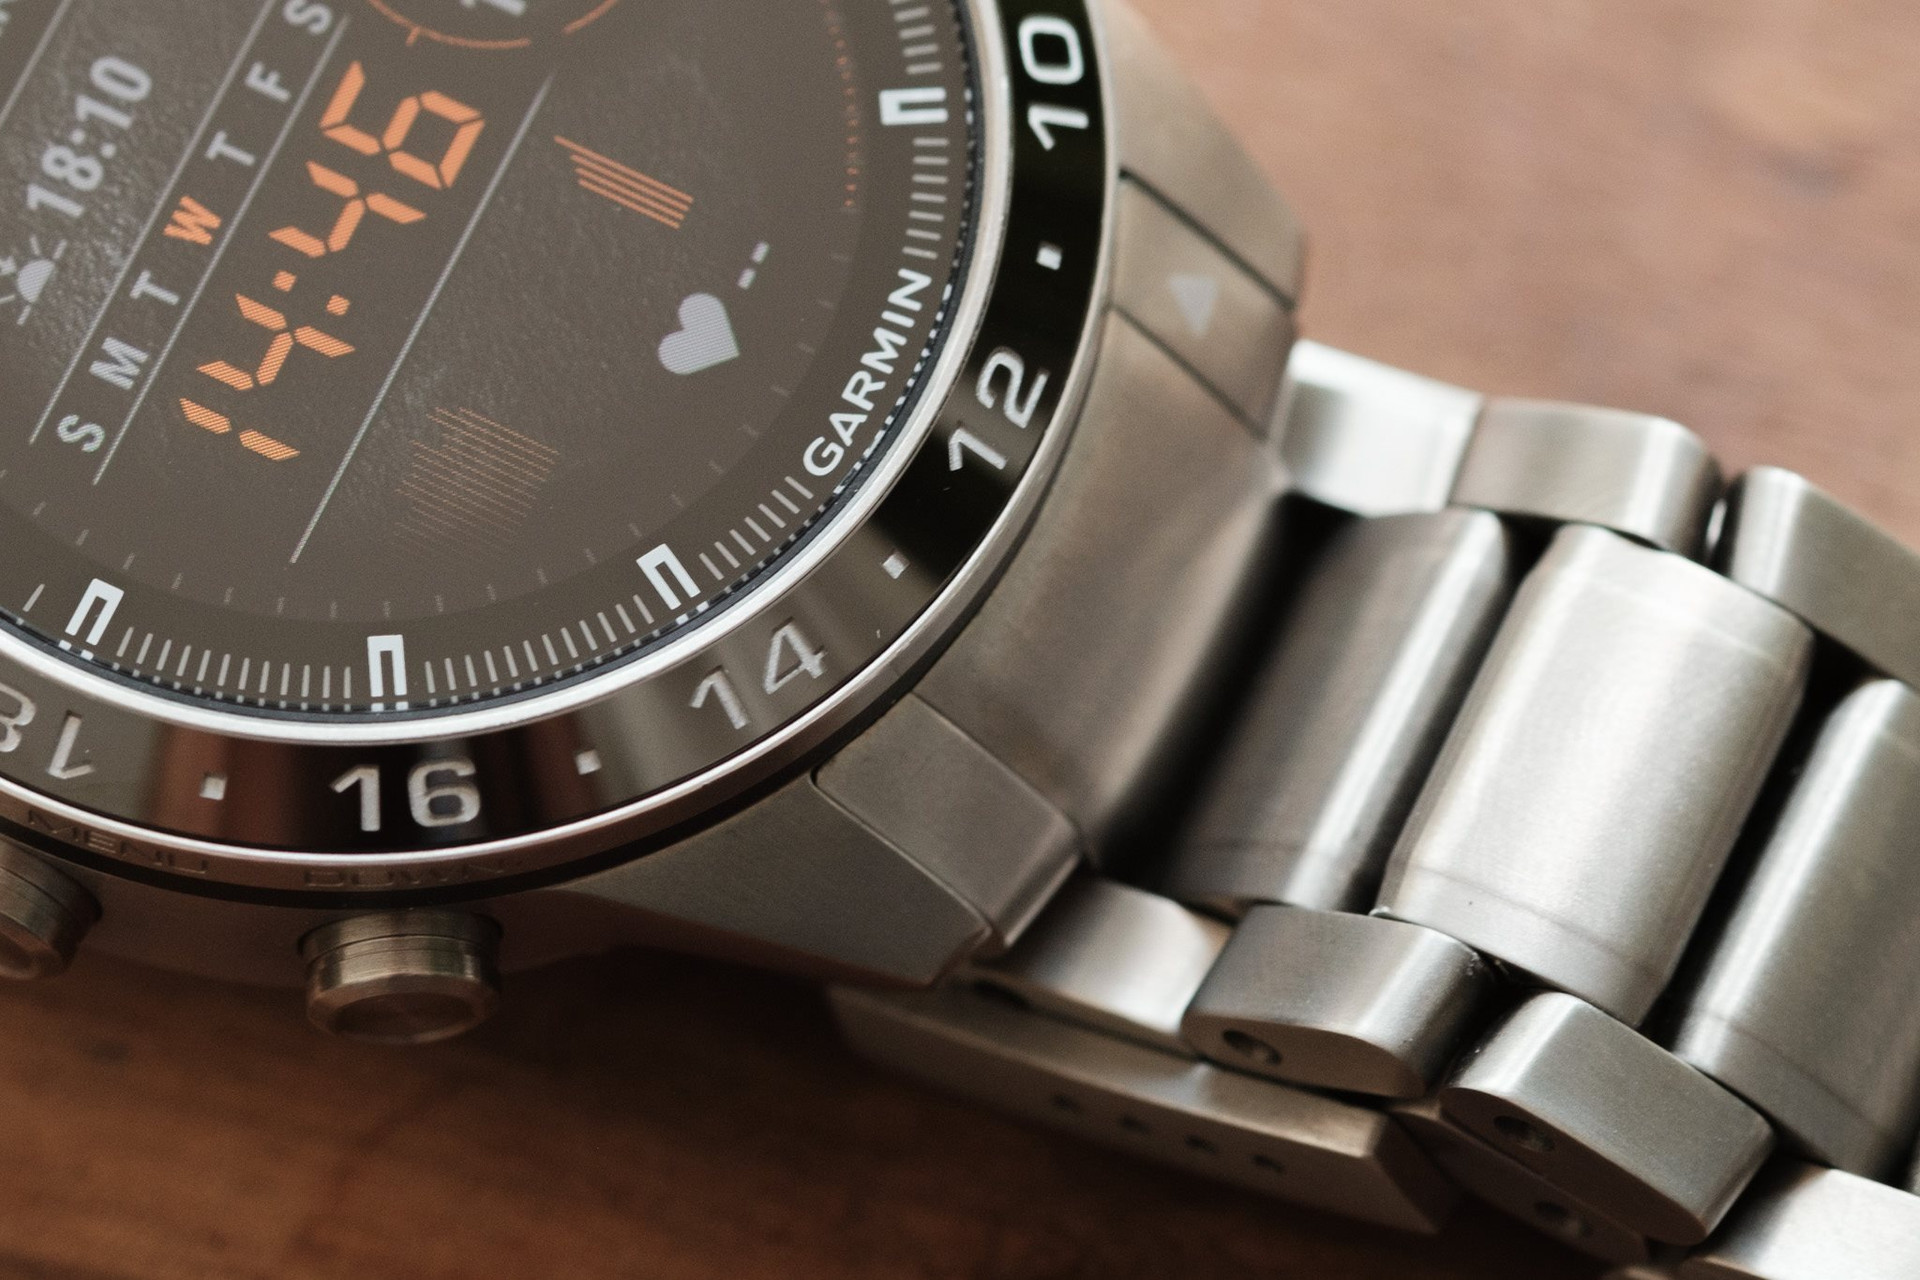 Mẫu đồng hồ Garmin có giá hơn 60 triệu đồng, không dành cho số đông - Ảnh 7.